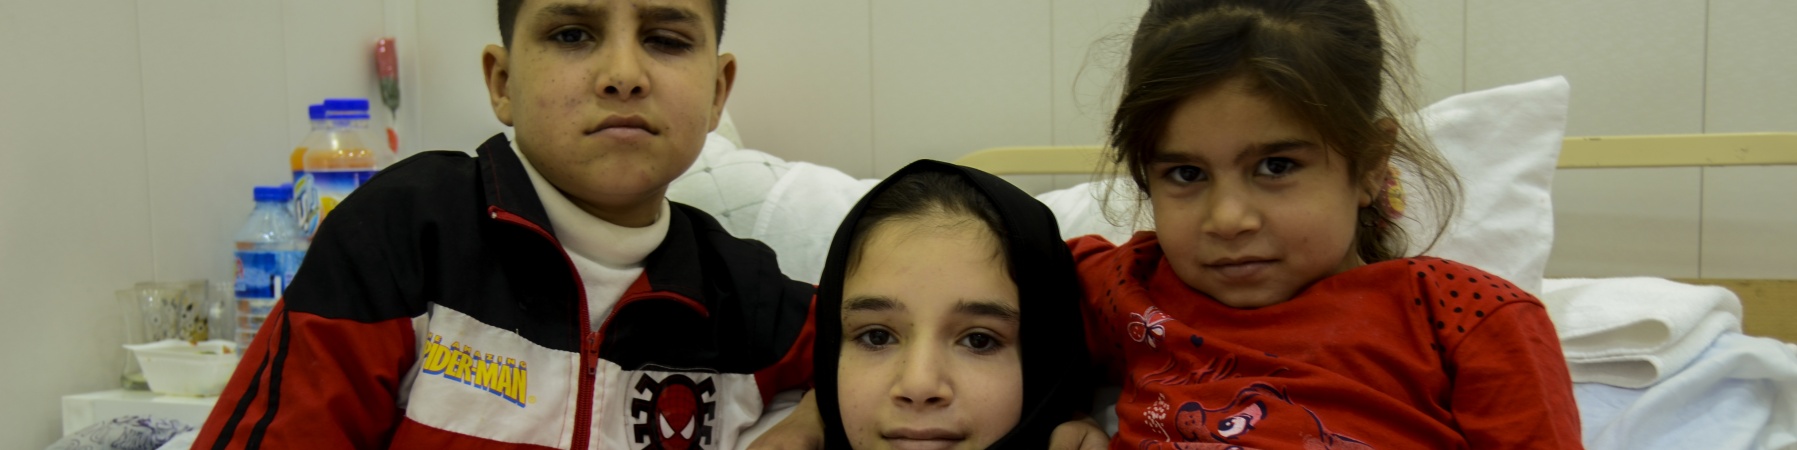 I tre figli di Abid sopravvisuti all'esplosione in Iraq